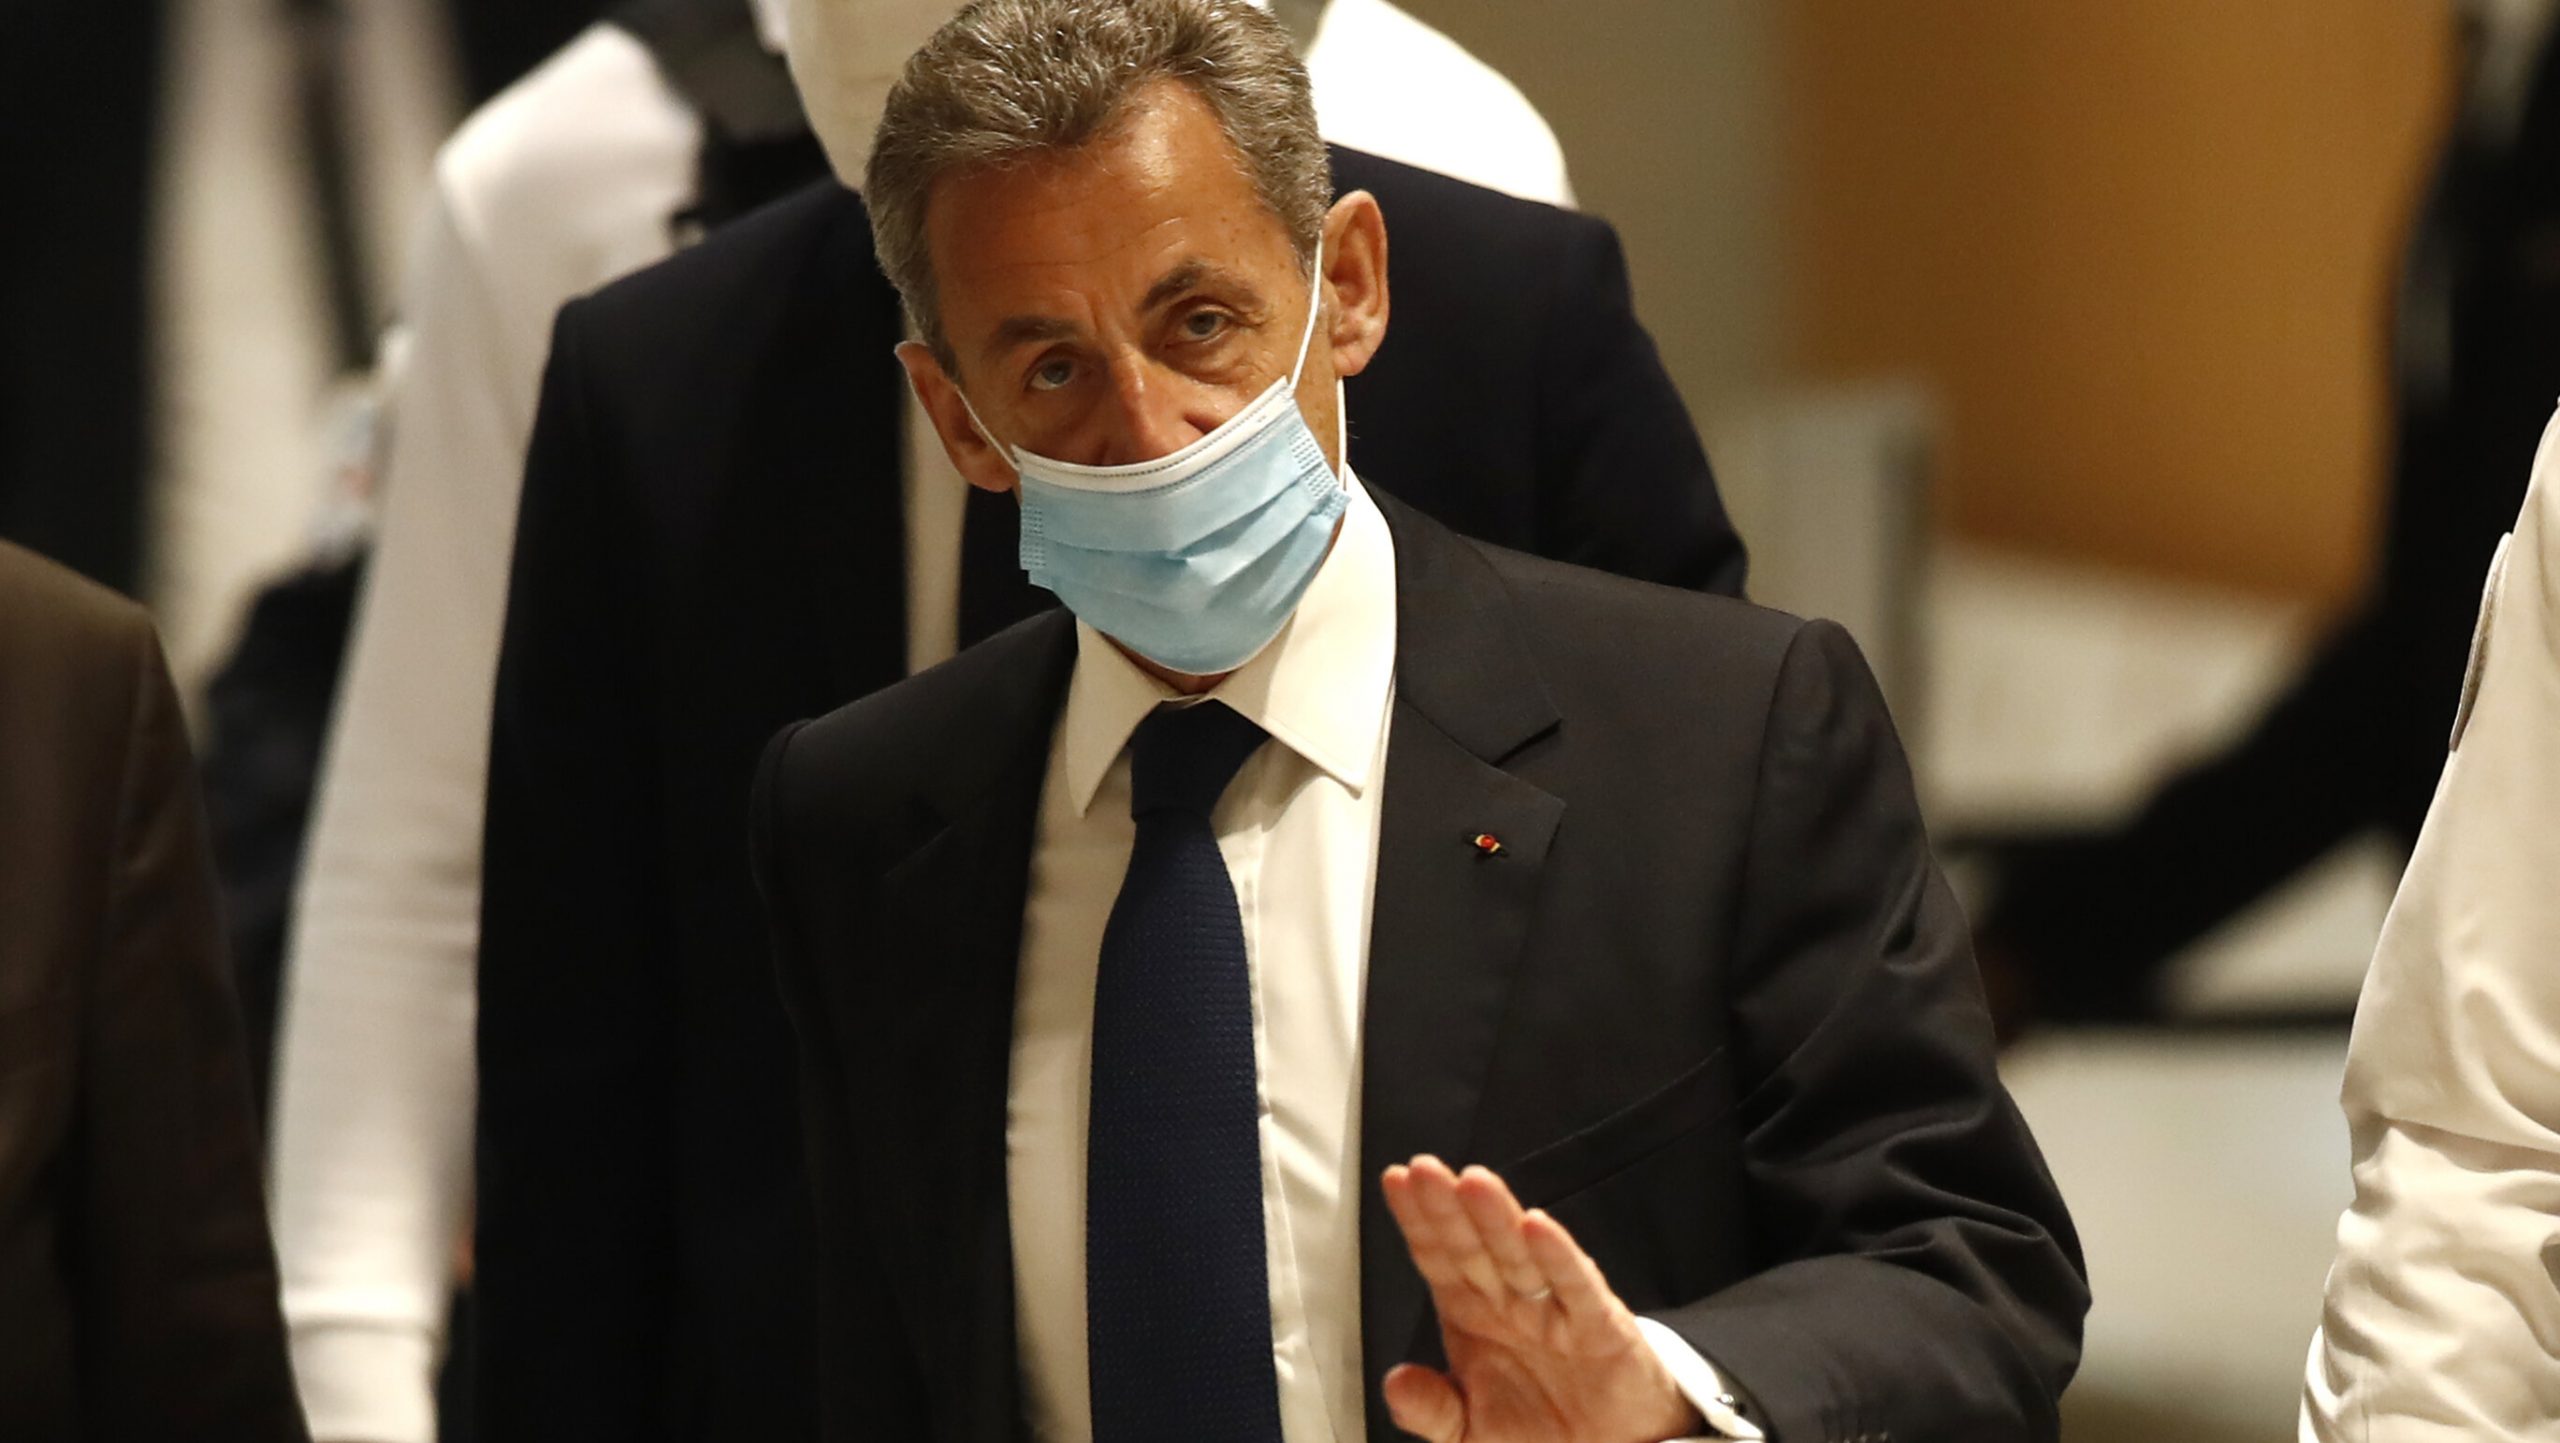 Nicolas Sarkozy a fost condamnat la trei ani de închisoare, dintre care doi cu suspendare. Primul președinte francez care ajunge în spatele gratiilor